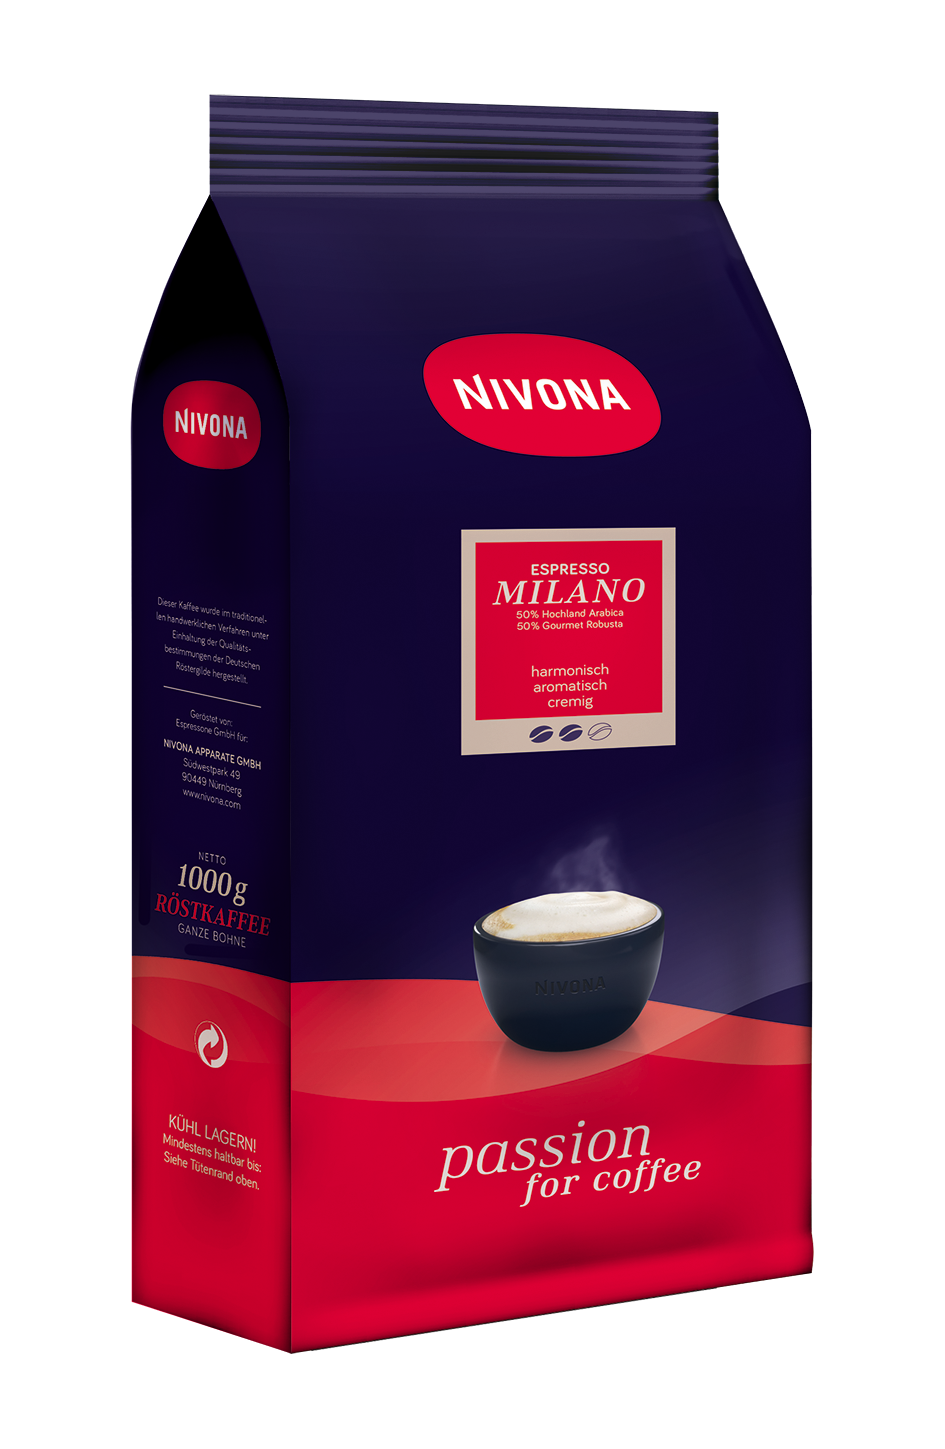 Nivona kaffeebohne - Die ausgezeichnetesten Nivona kaffeebohne auf einen Blick!